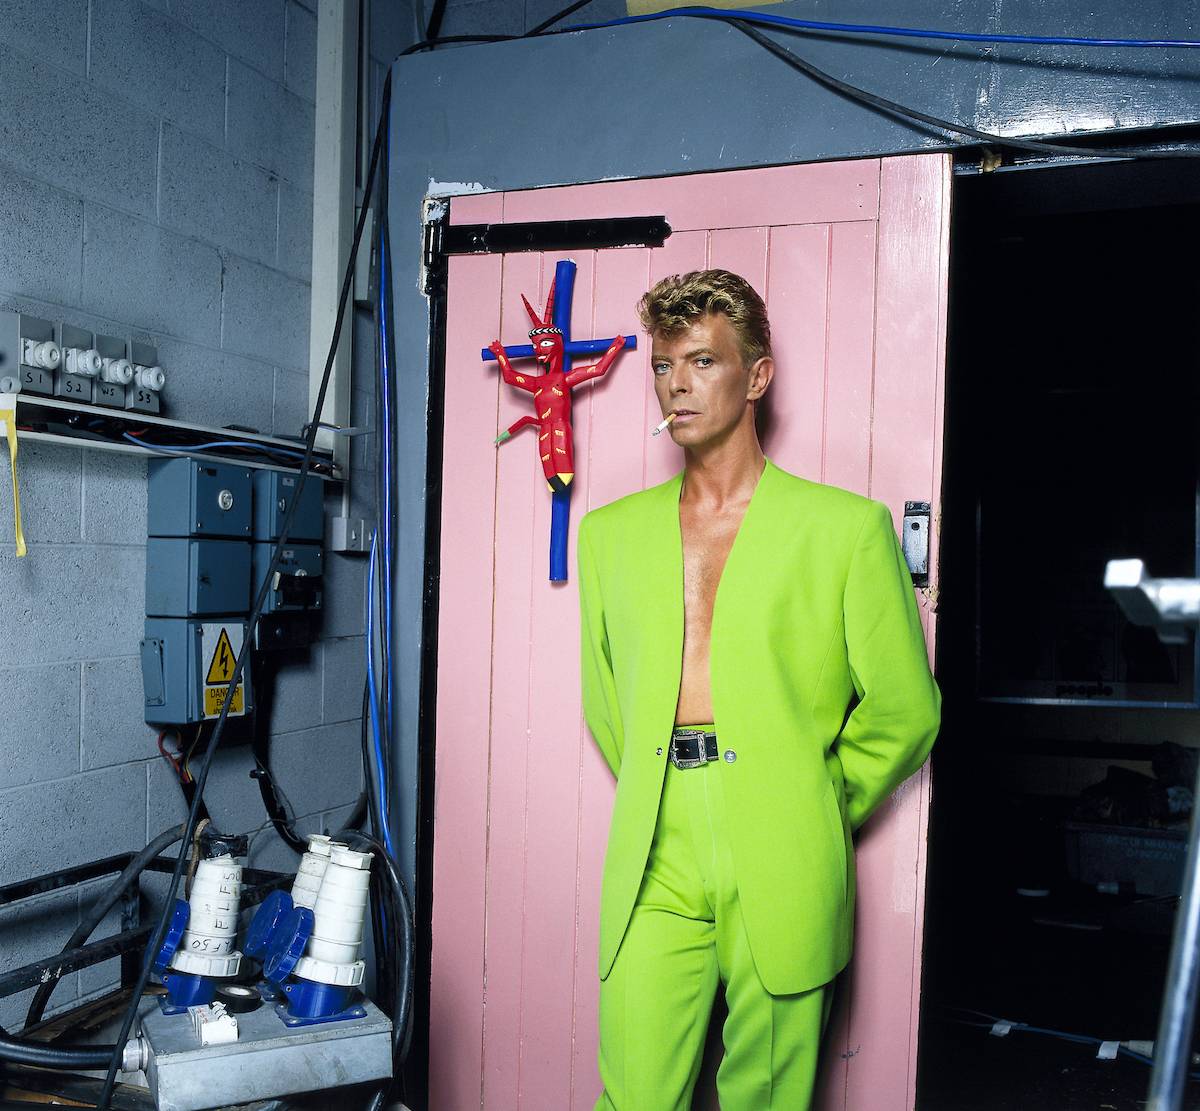 David Bowie na planie teledysku You Belong in Rock ’n’ Roll zespołu Tin Machines w garniturze z kolekcji Les Cow-boys, prêt-à-porter wiosna-lato 1992 Fot. Brian Aris/ArisPrints 2017